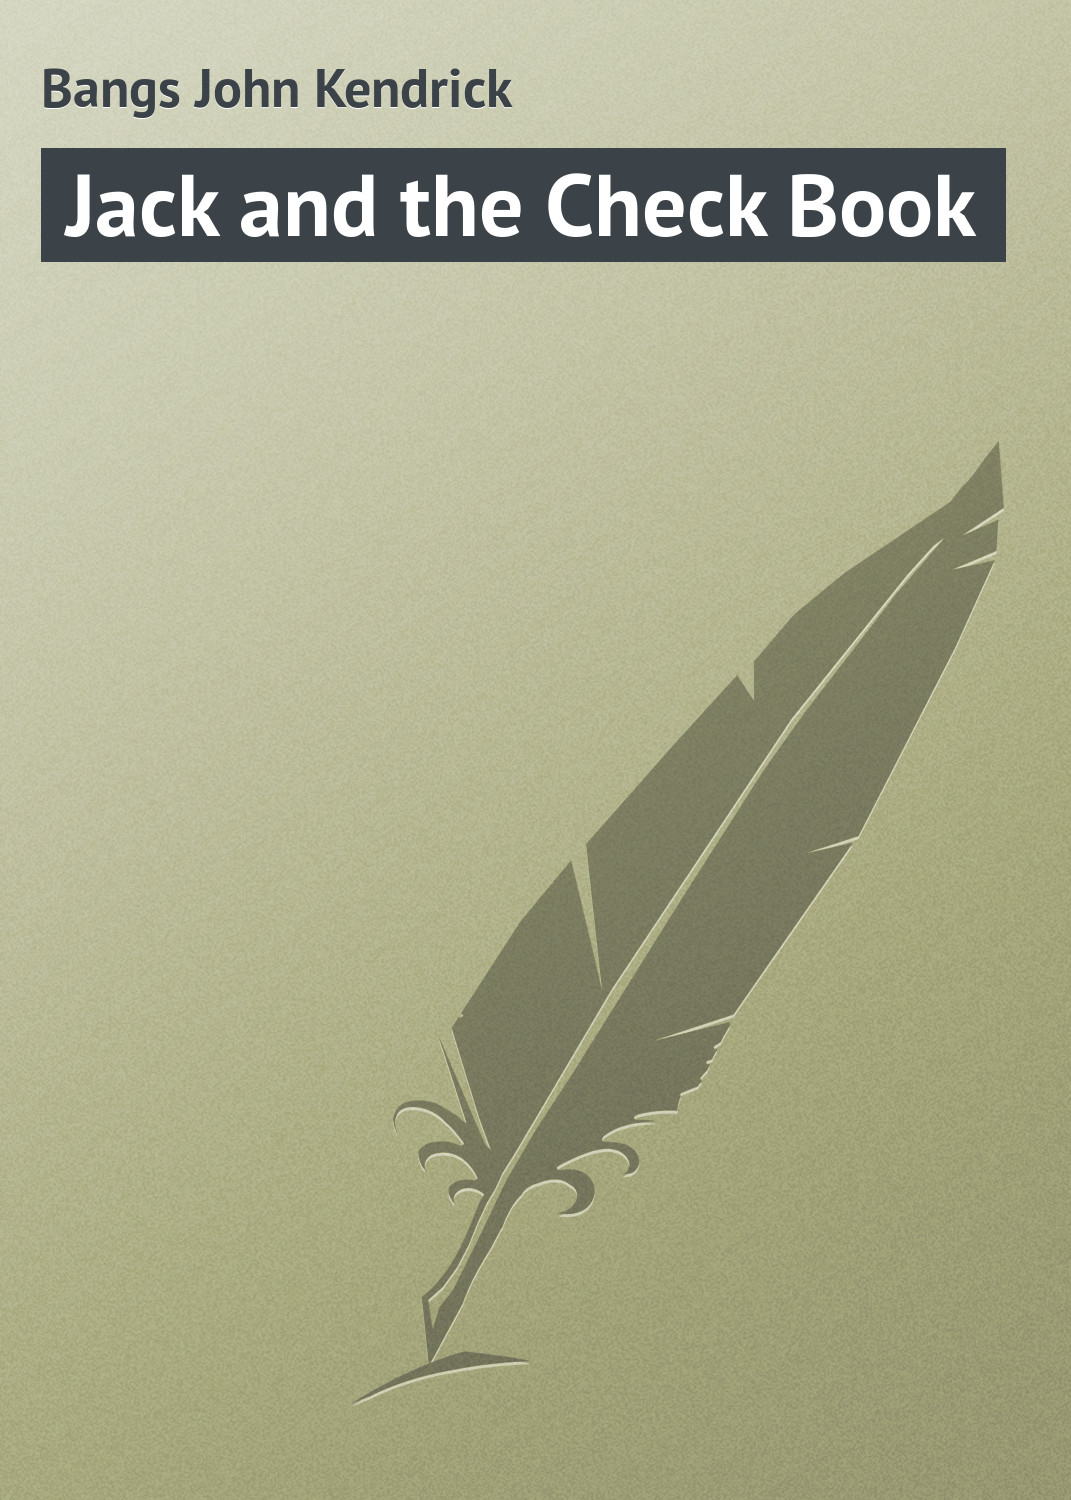 Книга Jack and the Check Book из серии , созданная John Bangs, может относится к жанру Зарубежная классика. Стоимость электронной книги Jack and the Check Book с идентификатором 23166363 составляет 5.99 руб.